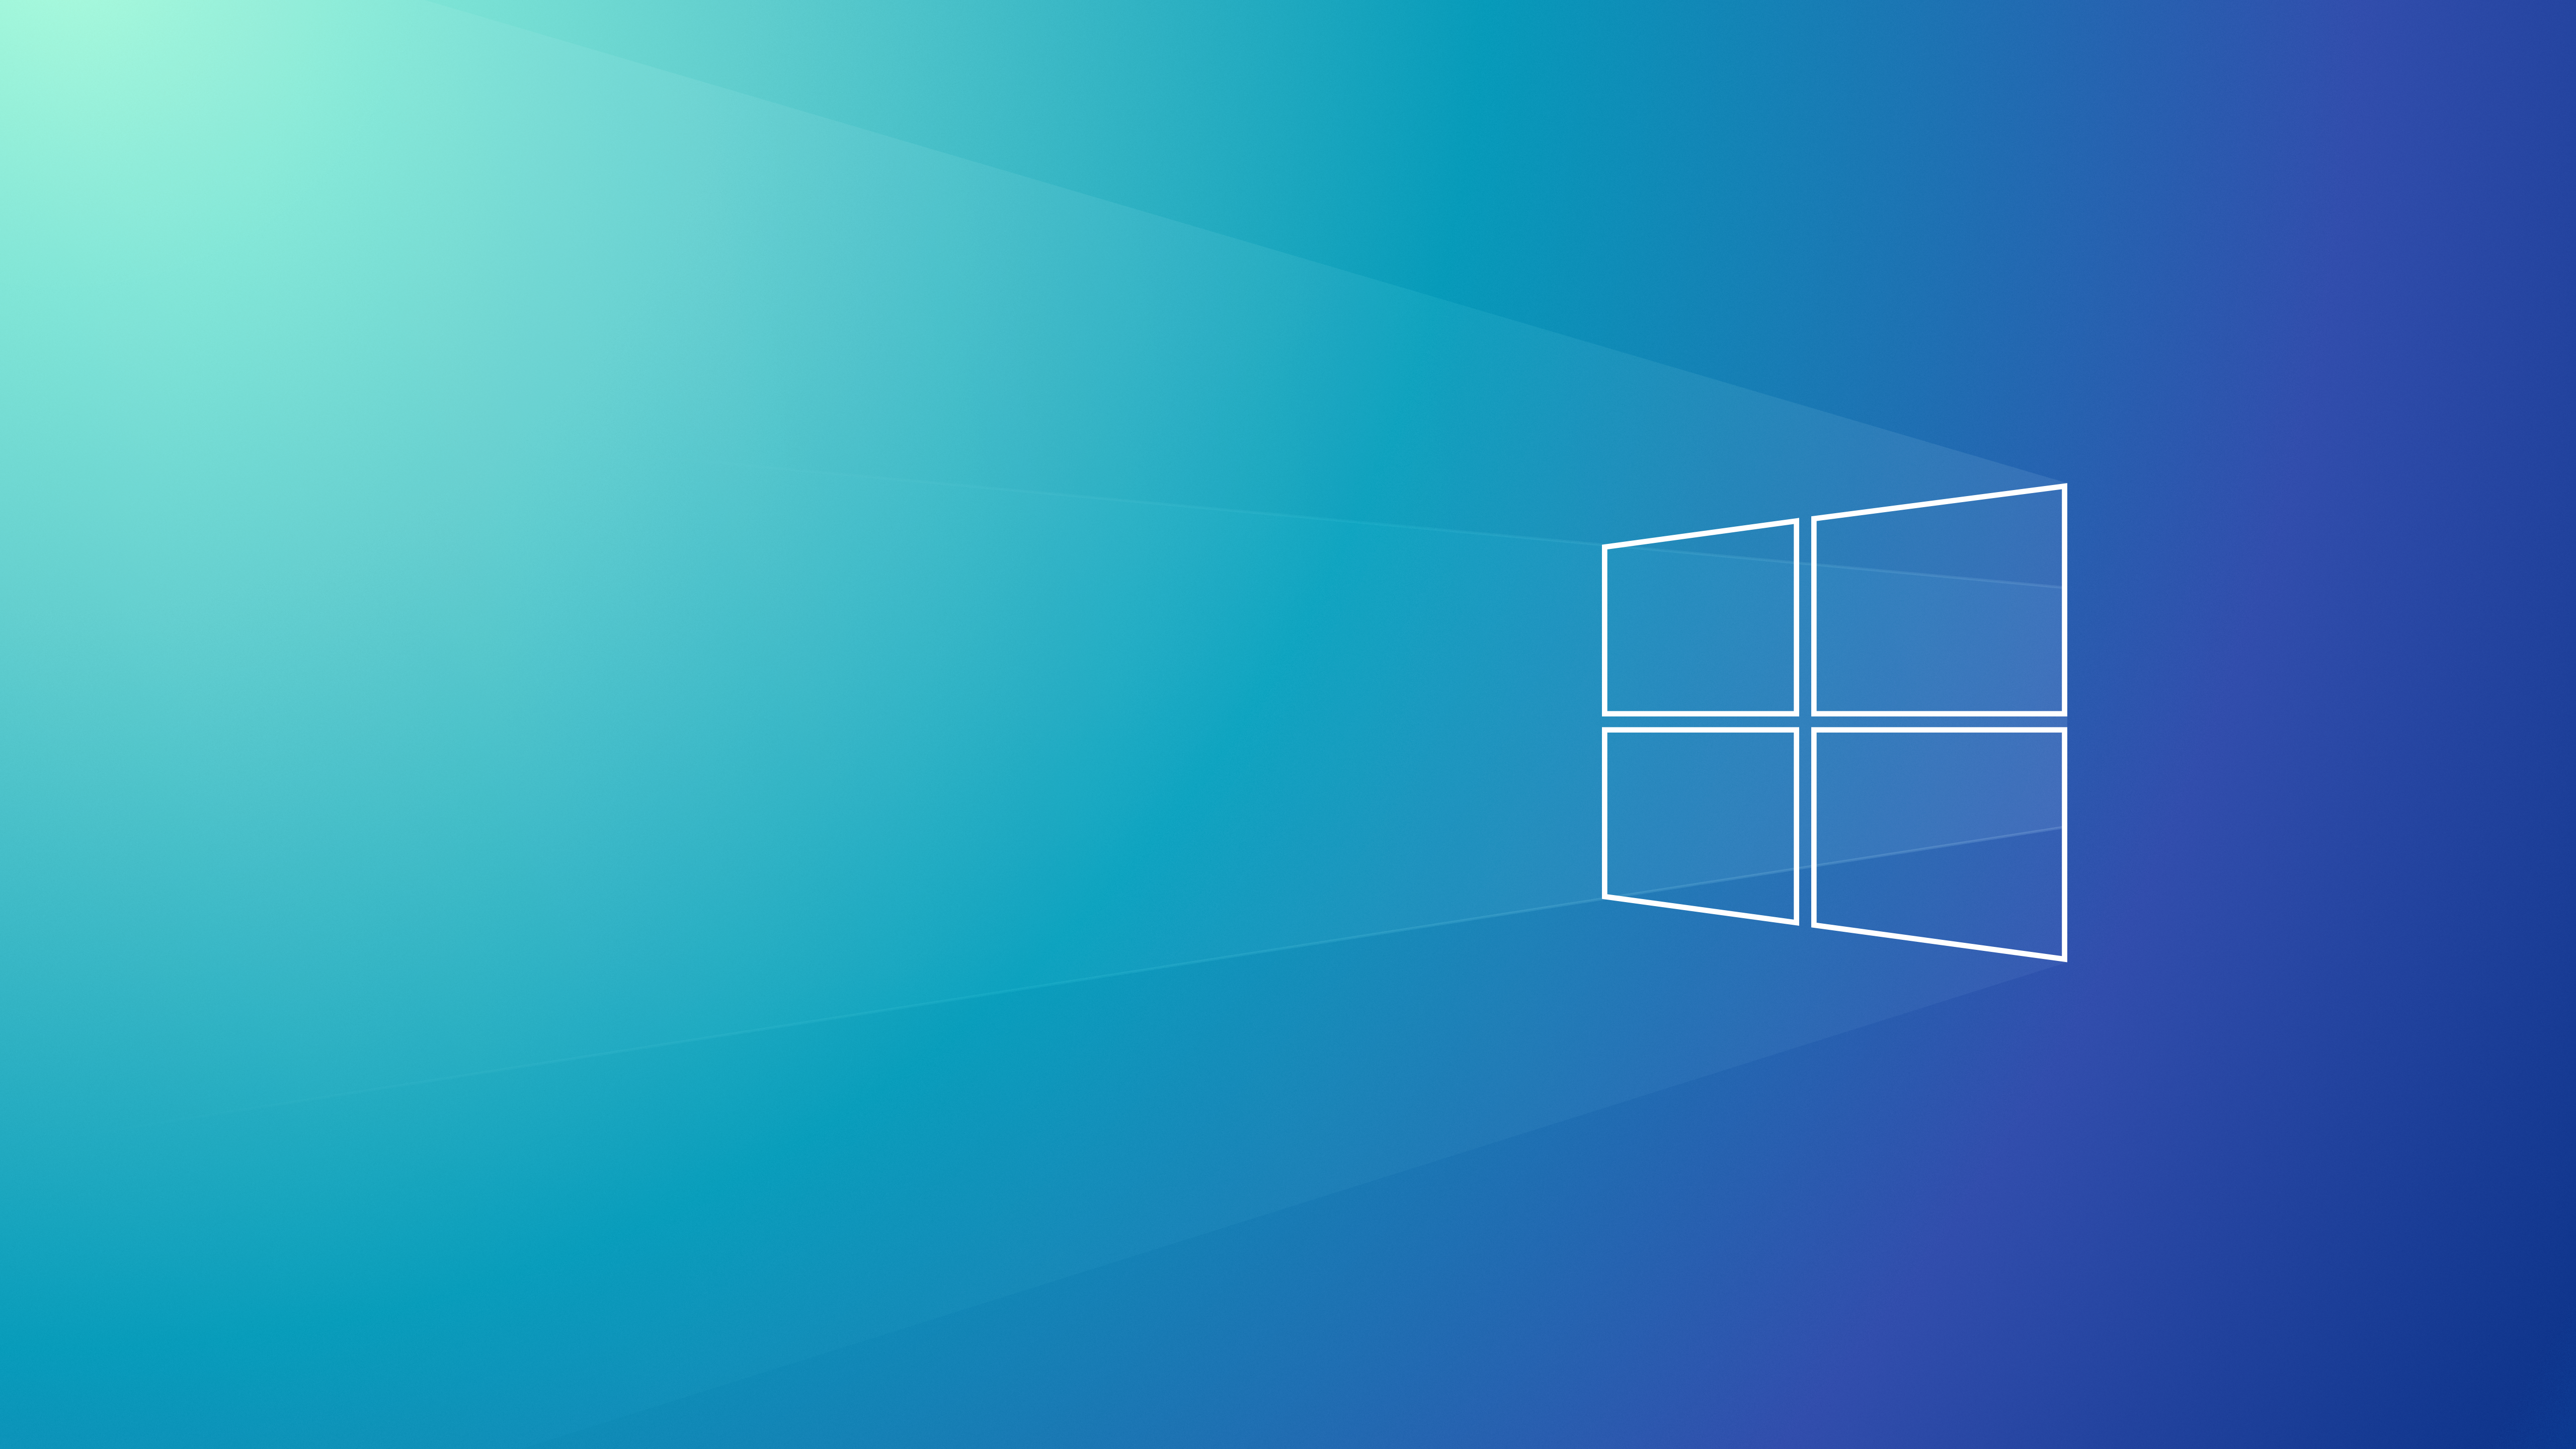 Hãy ngắm nhìn hình nền Windows 10 tuyệt đẹp với thiết kế tối giản và độ phân giải cao giúp hình ảnh trông rõ nét và sống động hơn bao giờ hết.